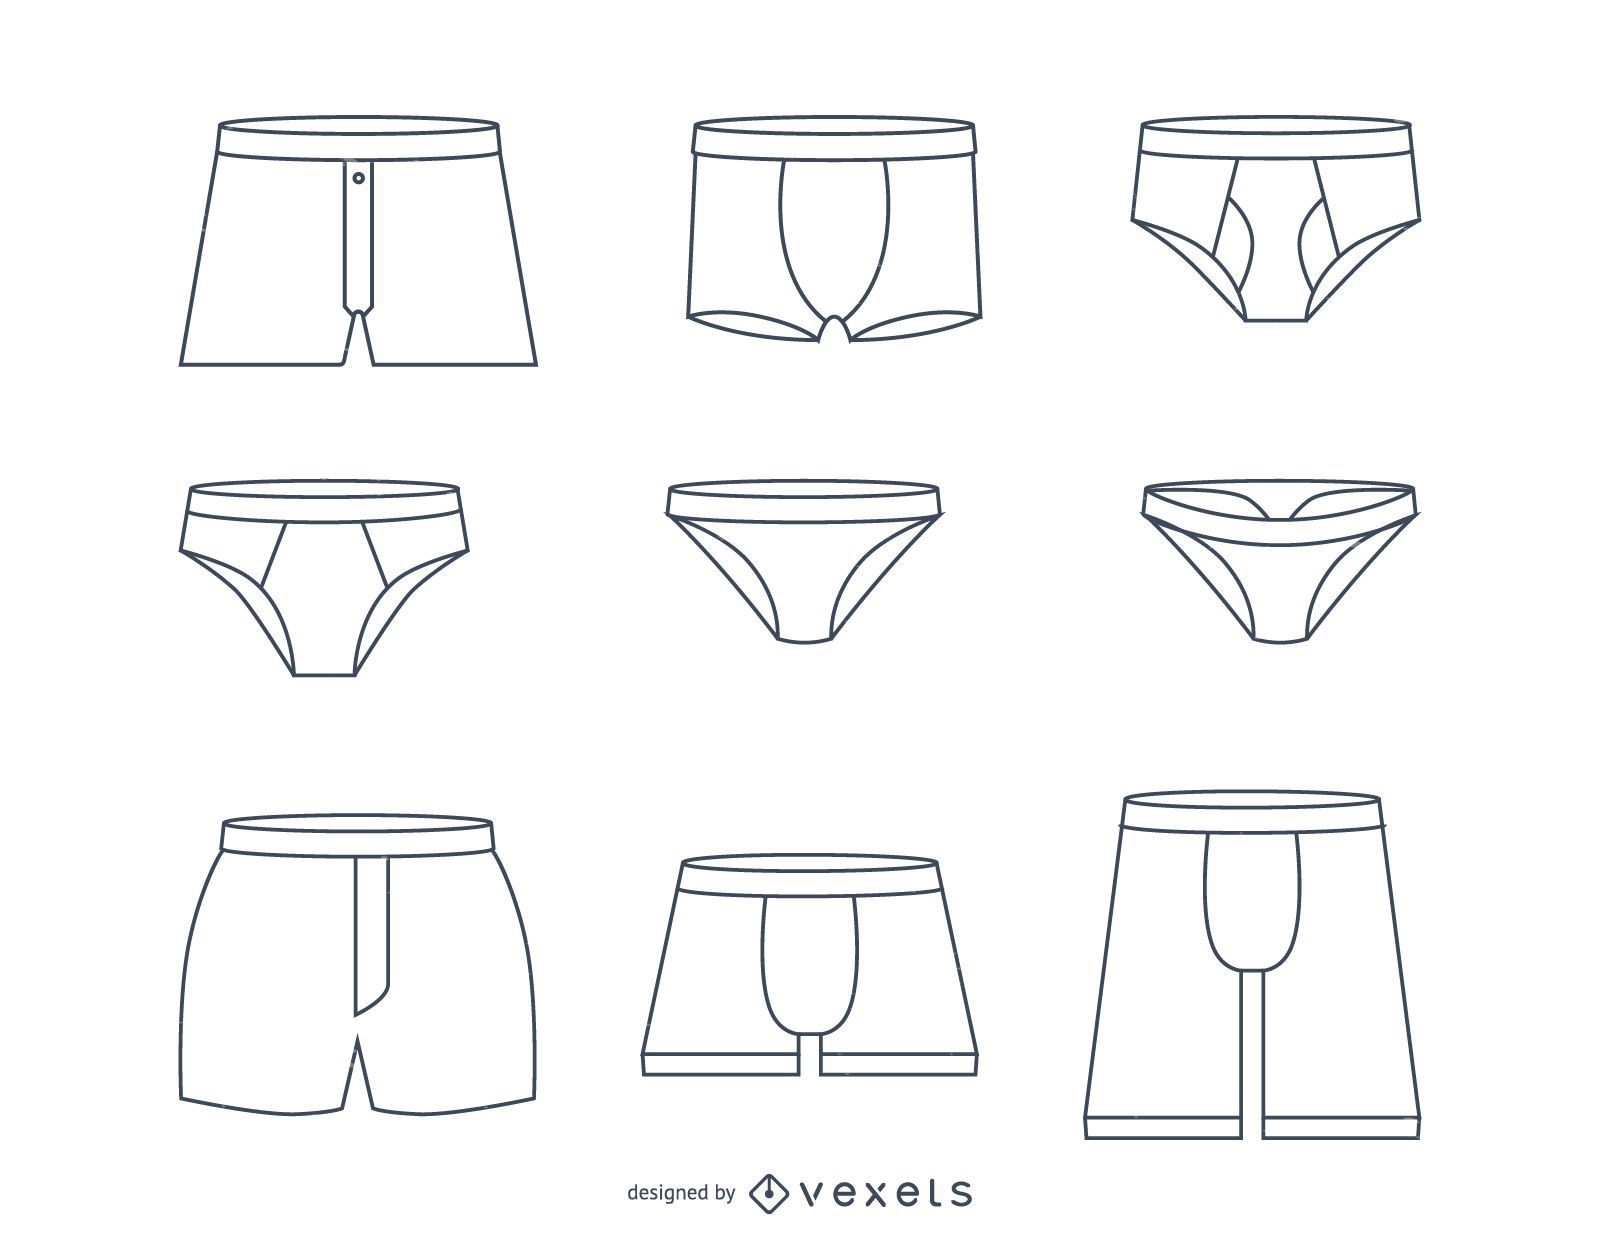 Men Underwear Vector Art PNG Images